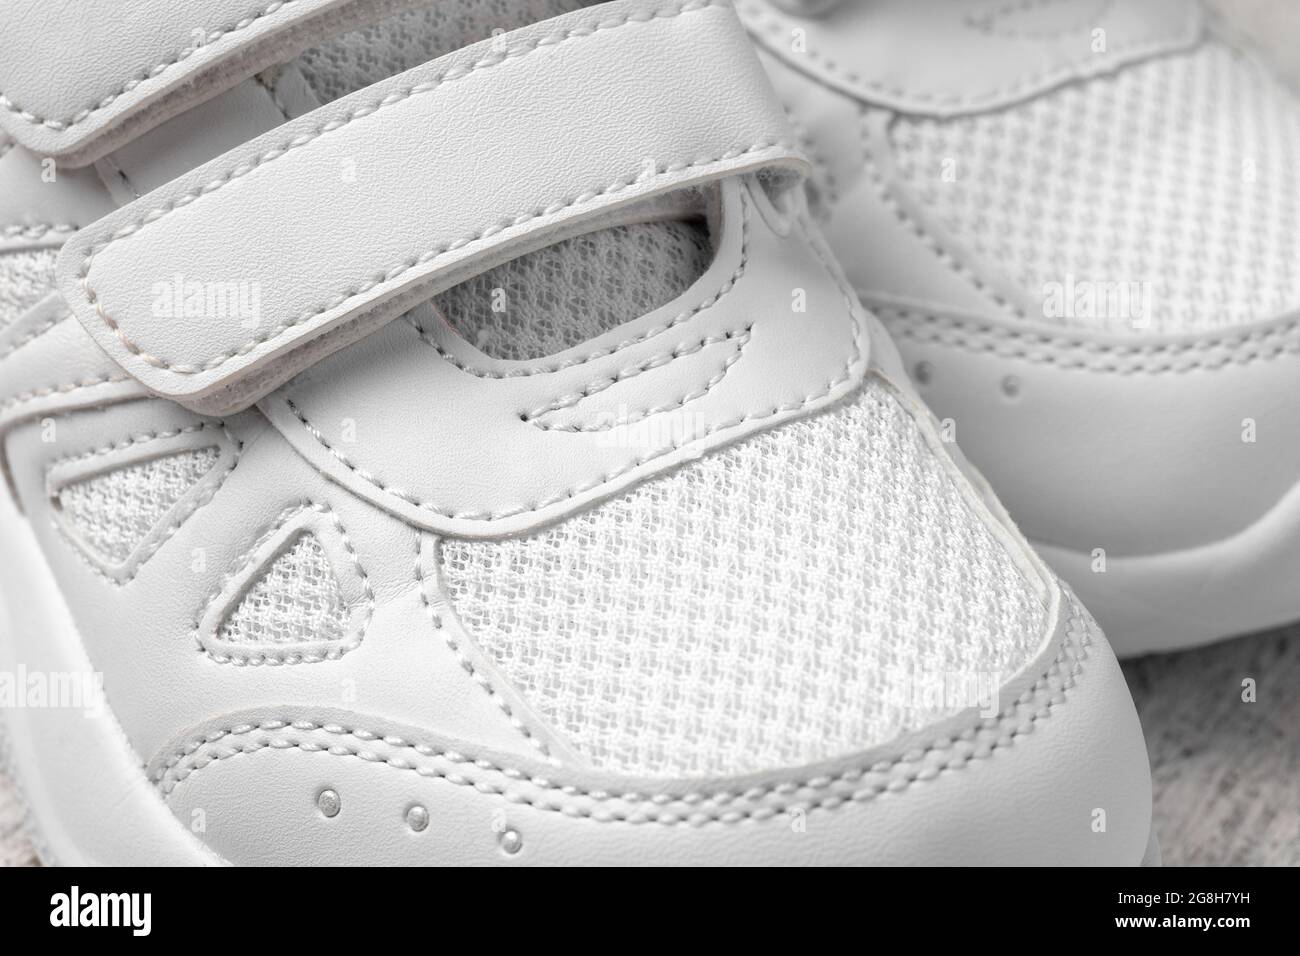 Macro photographie des sneakers blanches. Deux chaussures blanches pour enfants avec attaches Velcro pour le confort des chaussures pour enfants, vue du dessus Banque D'Images